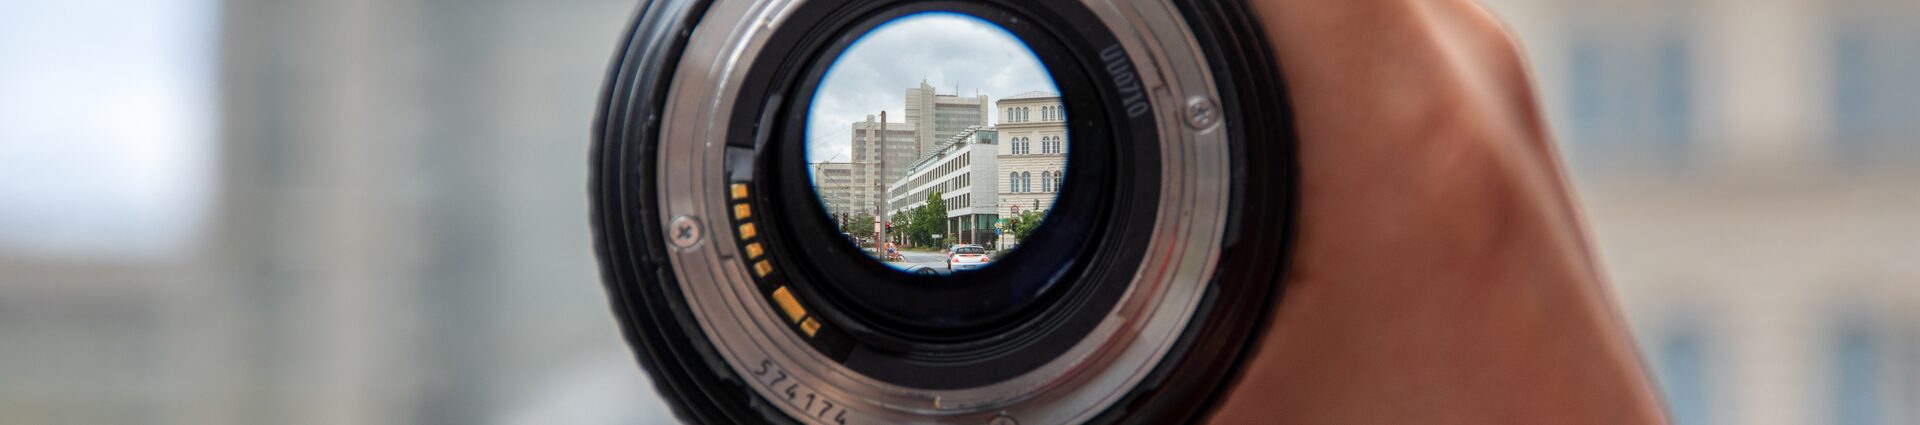 Das Stadthaus durch ein Kamera-Objektiv, das in einer Hand gehalten wird, fotografiert.